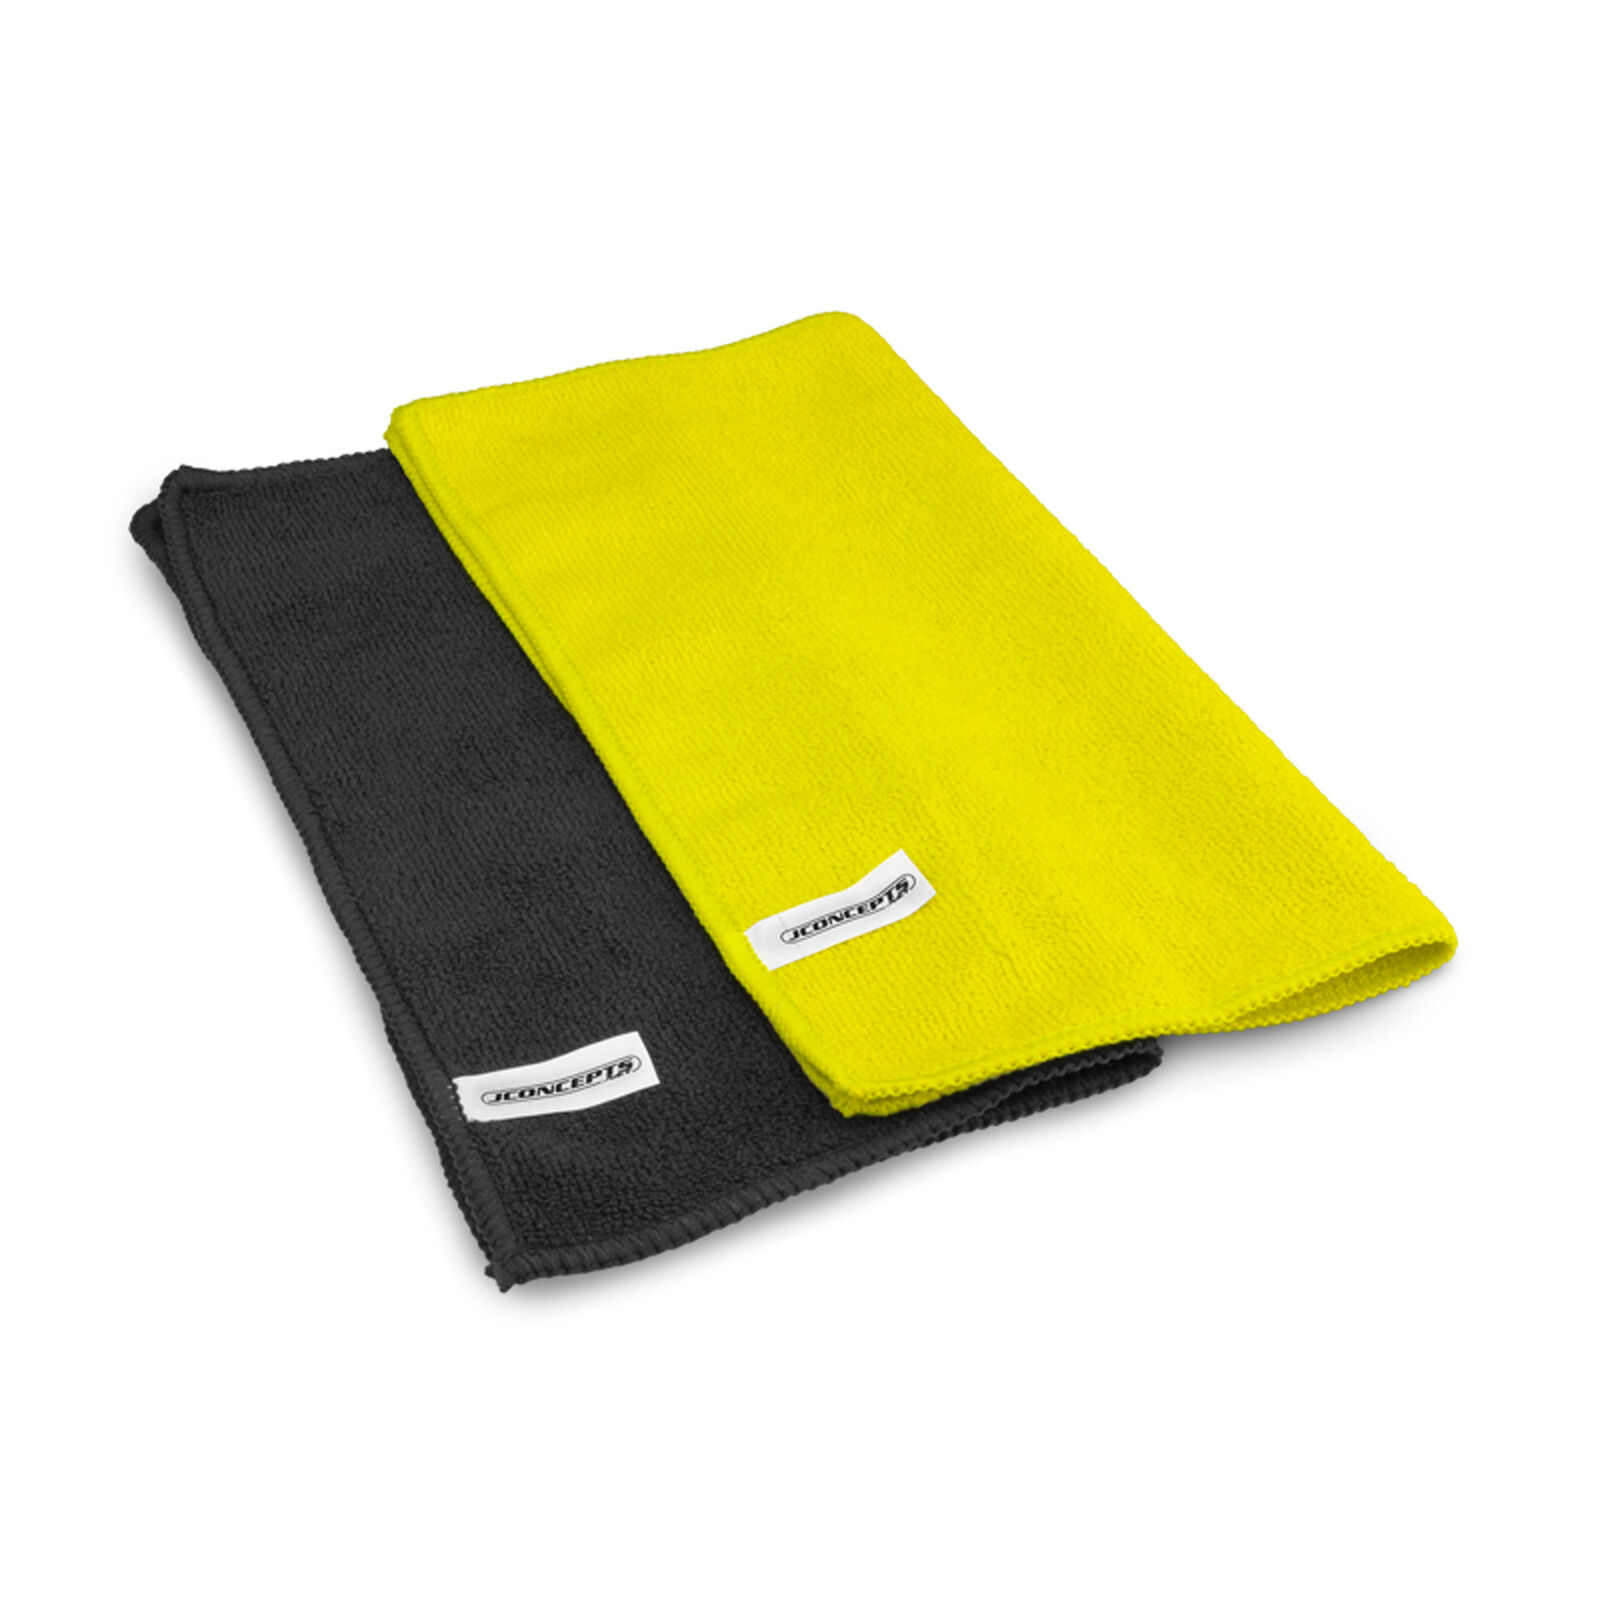 Dirt Racing Microfiber Towel Black & Yellow (2)